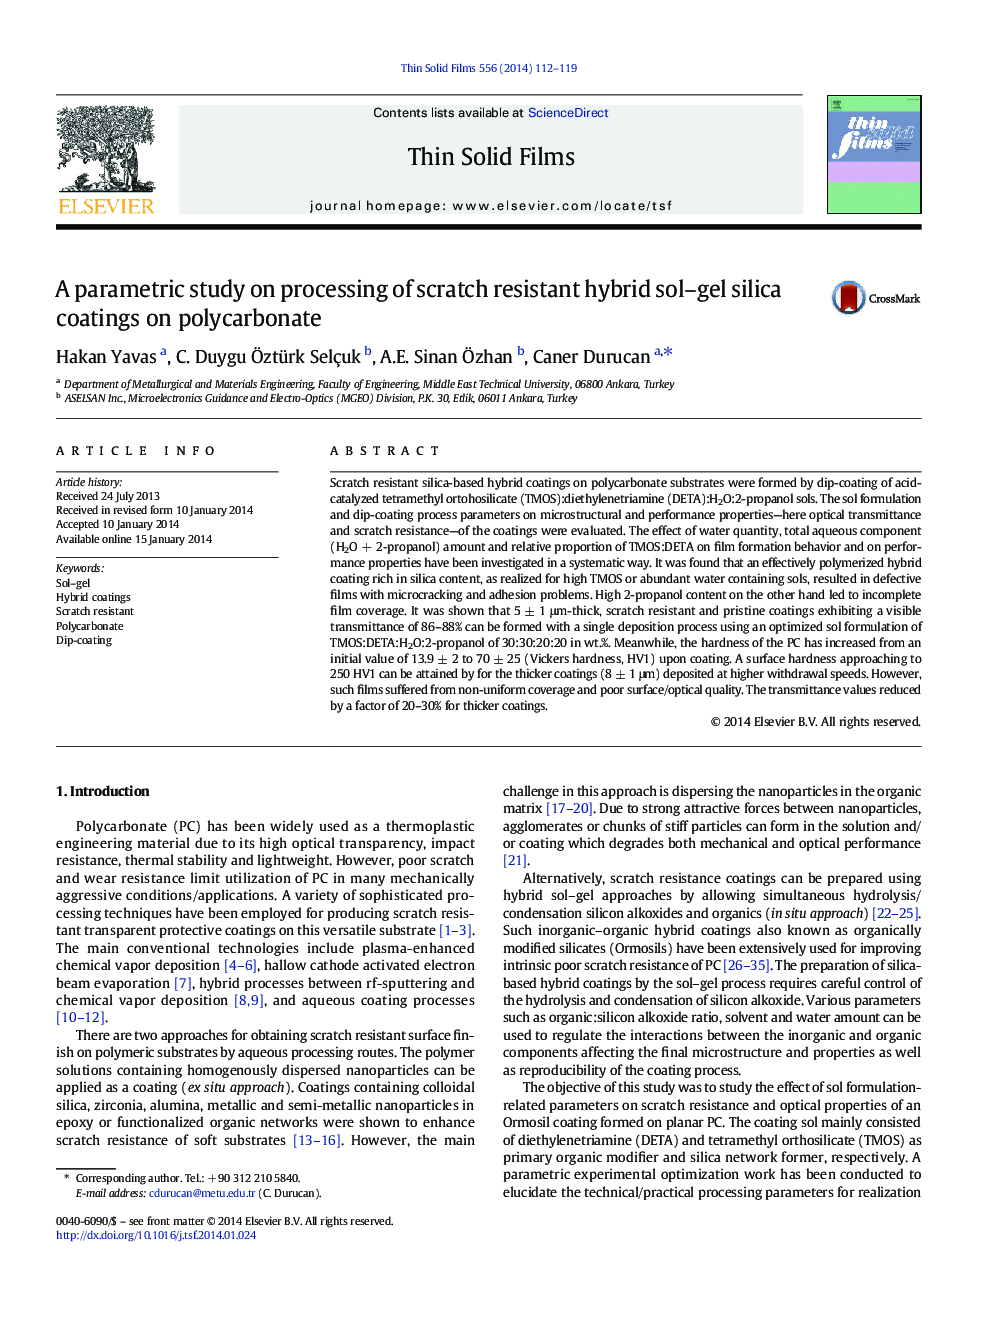 یک مطالعه پارامتریک در مورد پردازش پوشش های سیلیکا سل ژل مقاوم در برابر خراش در پلی کربنات 